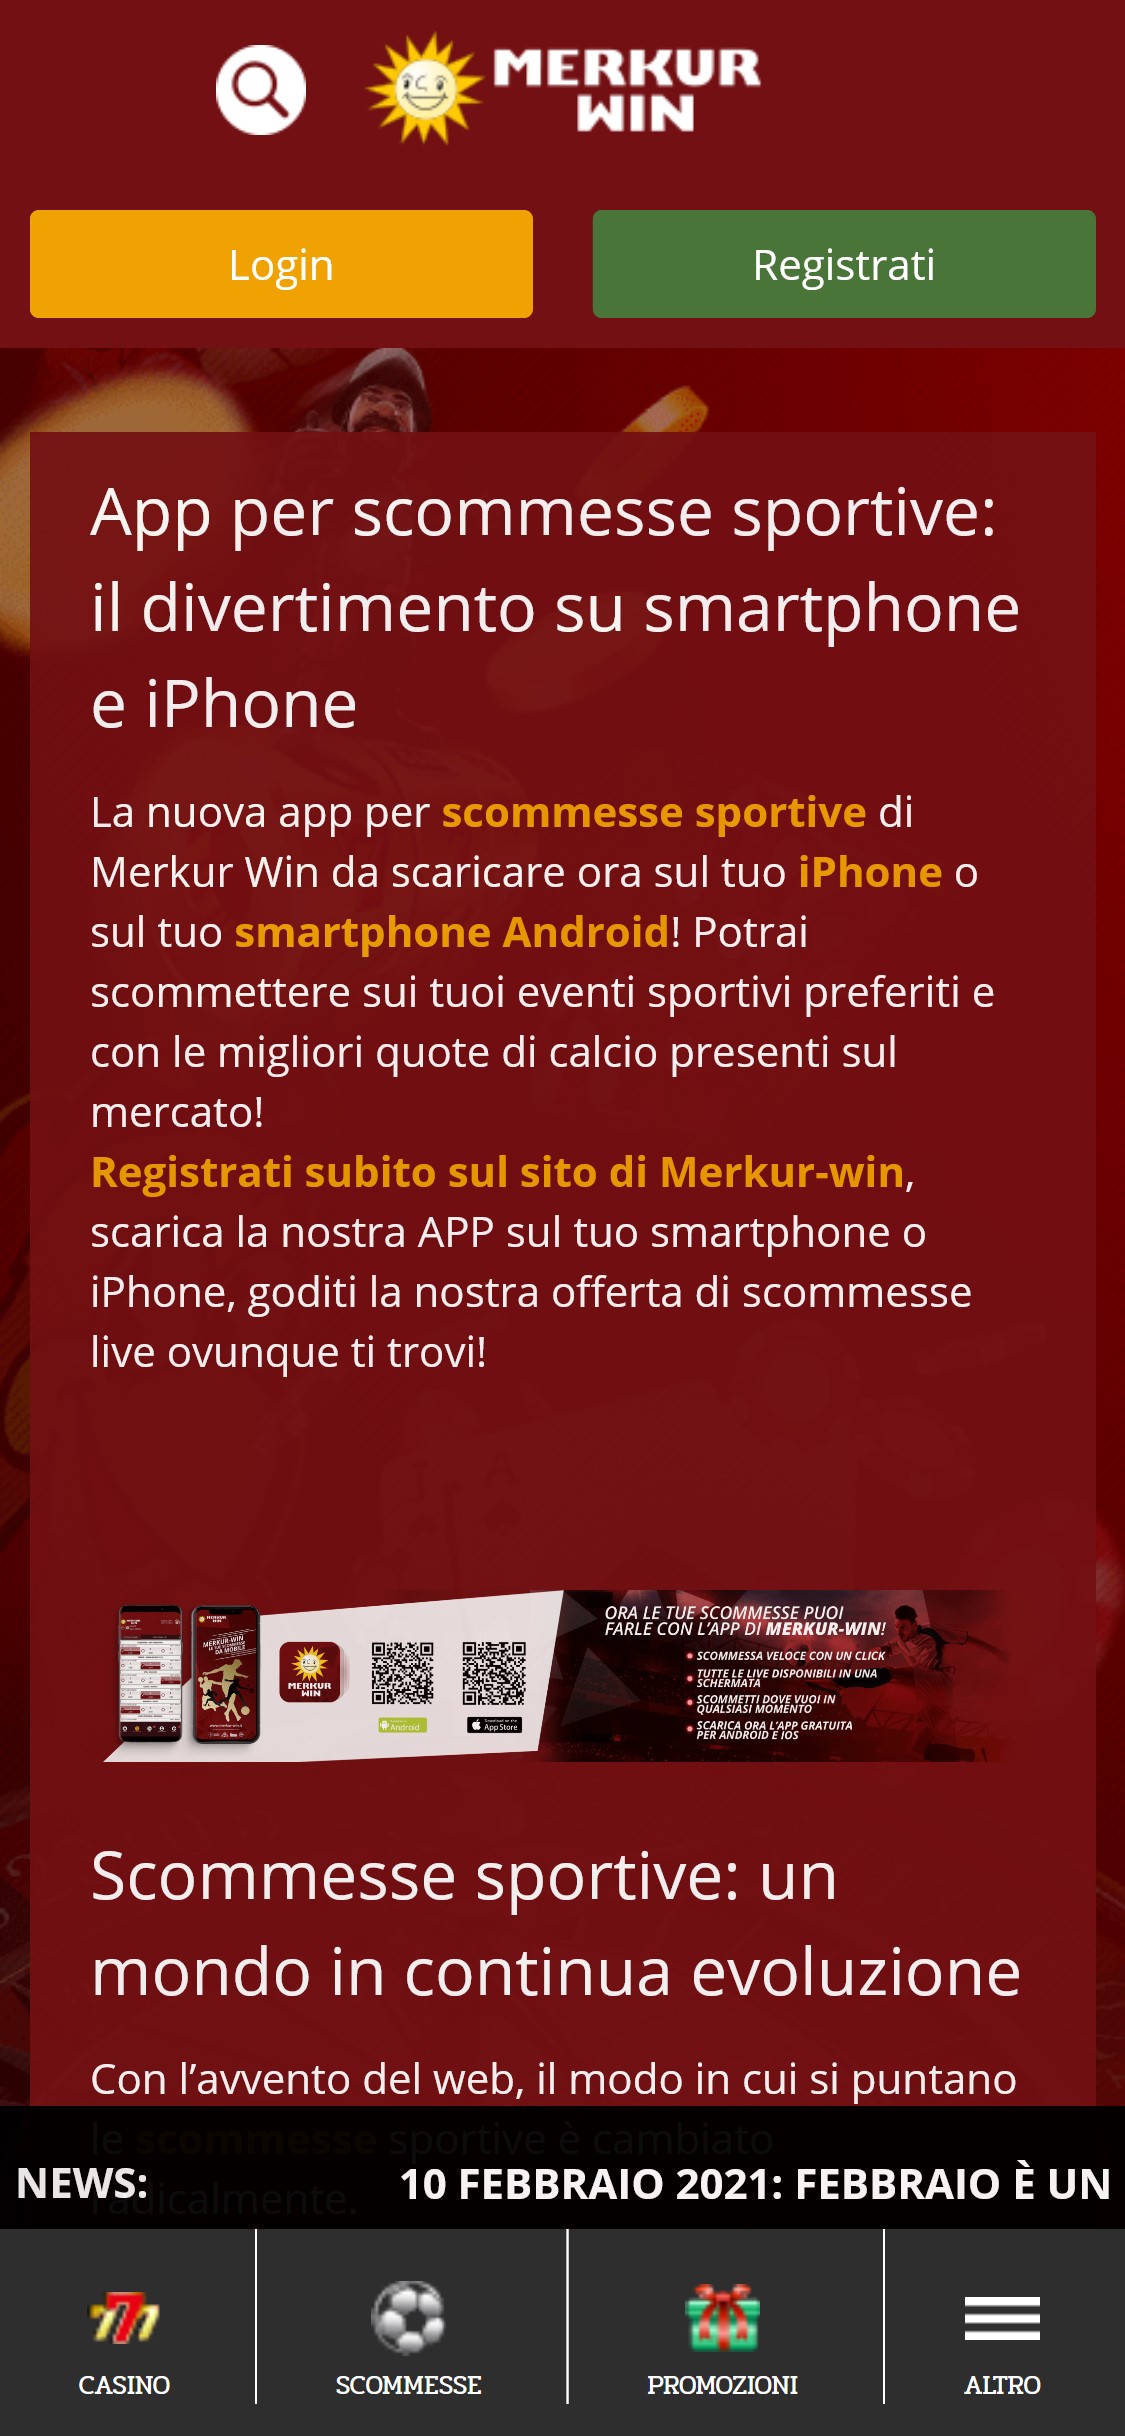 Merkur Win Mobile App Review